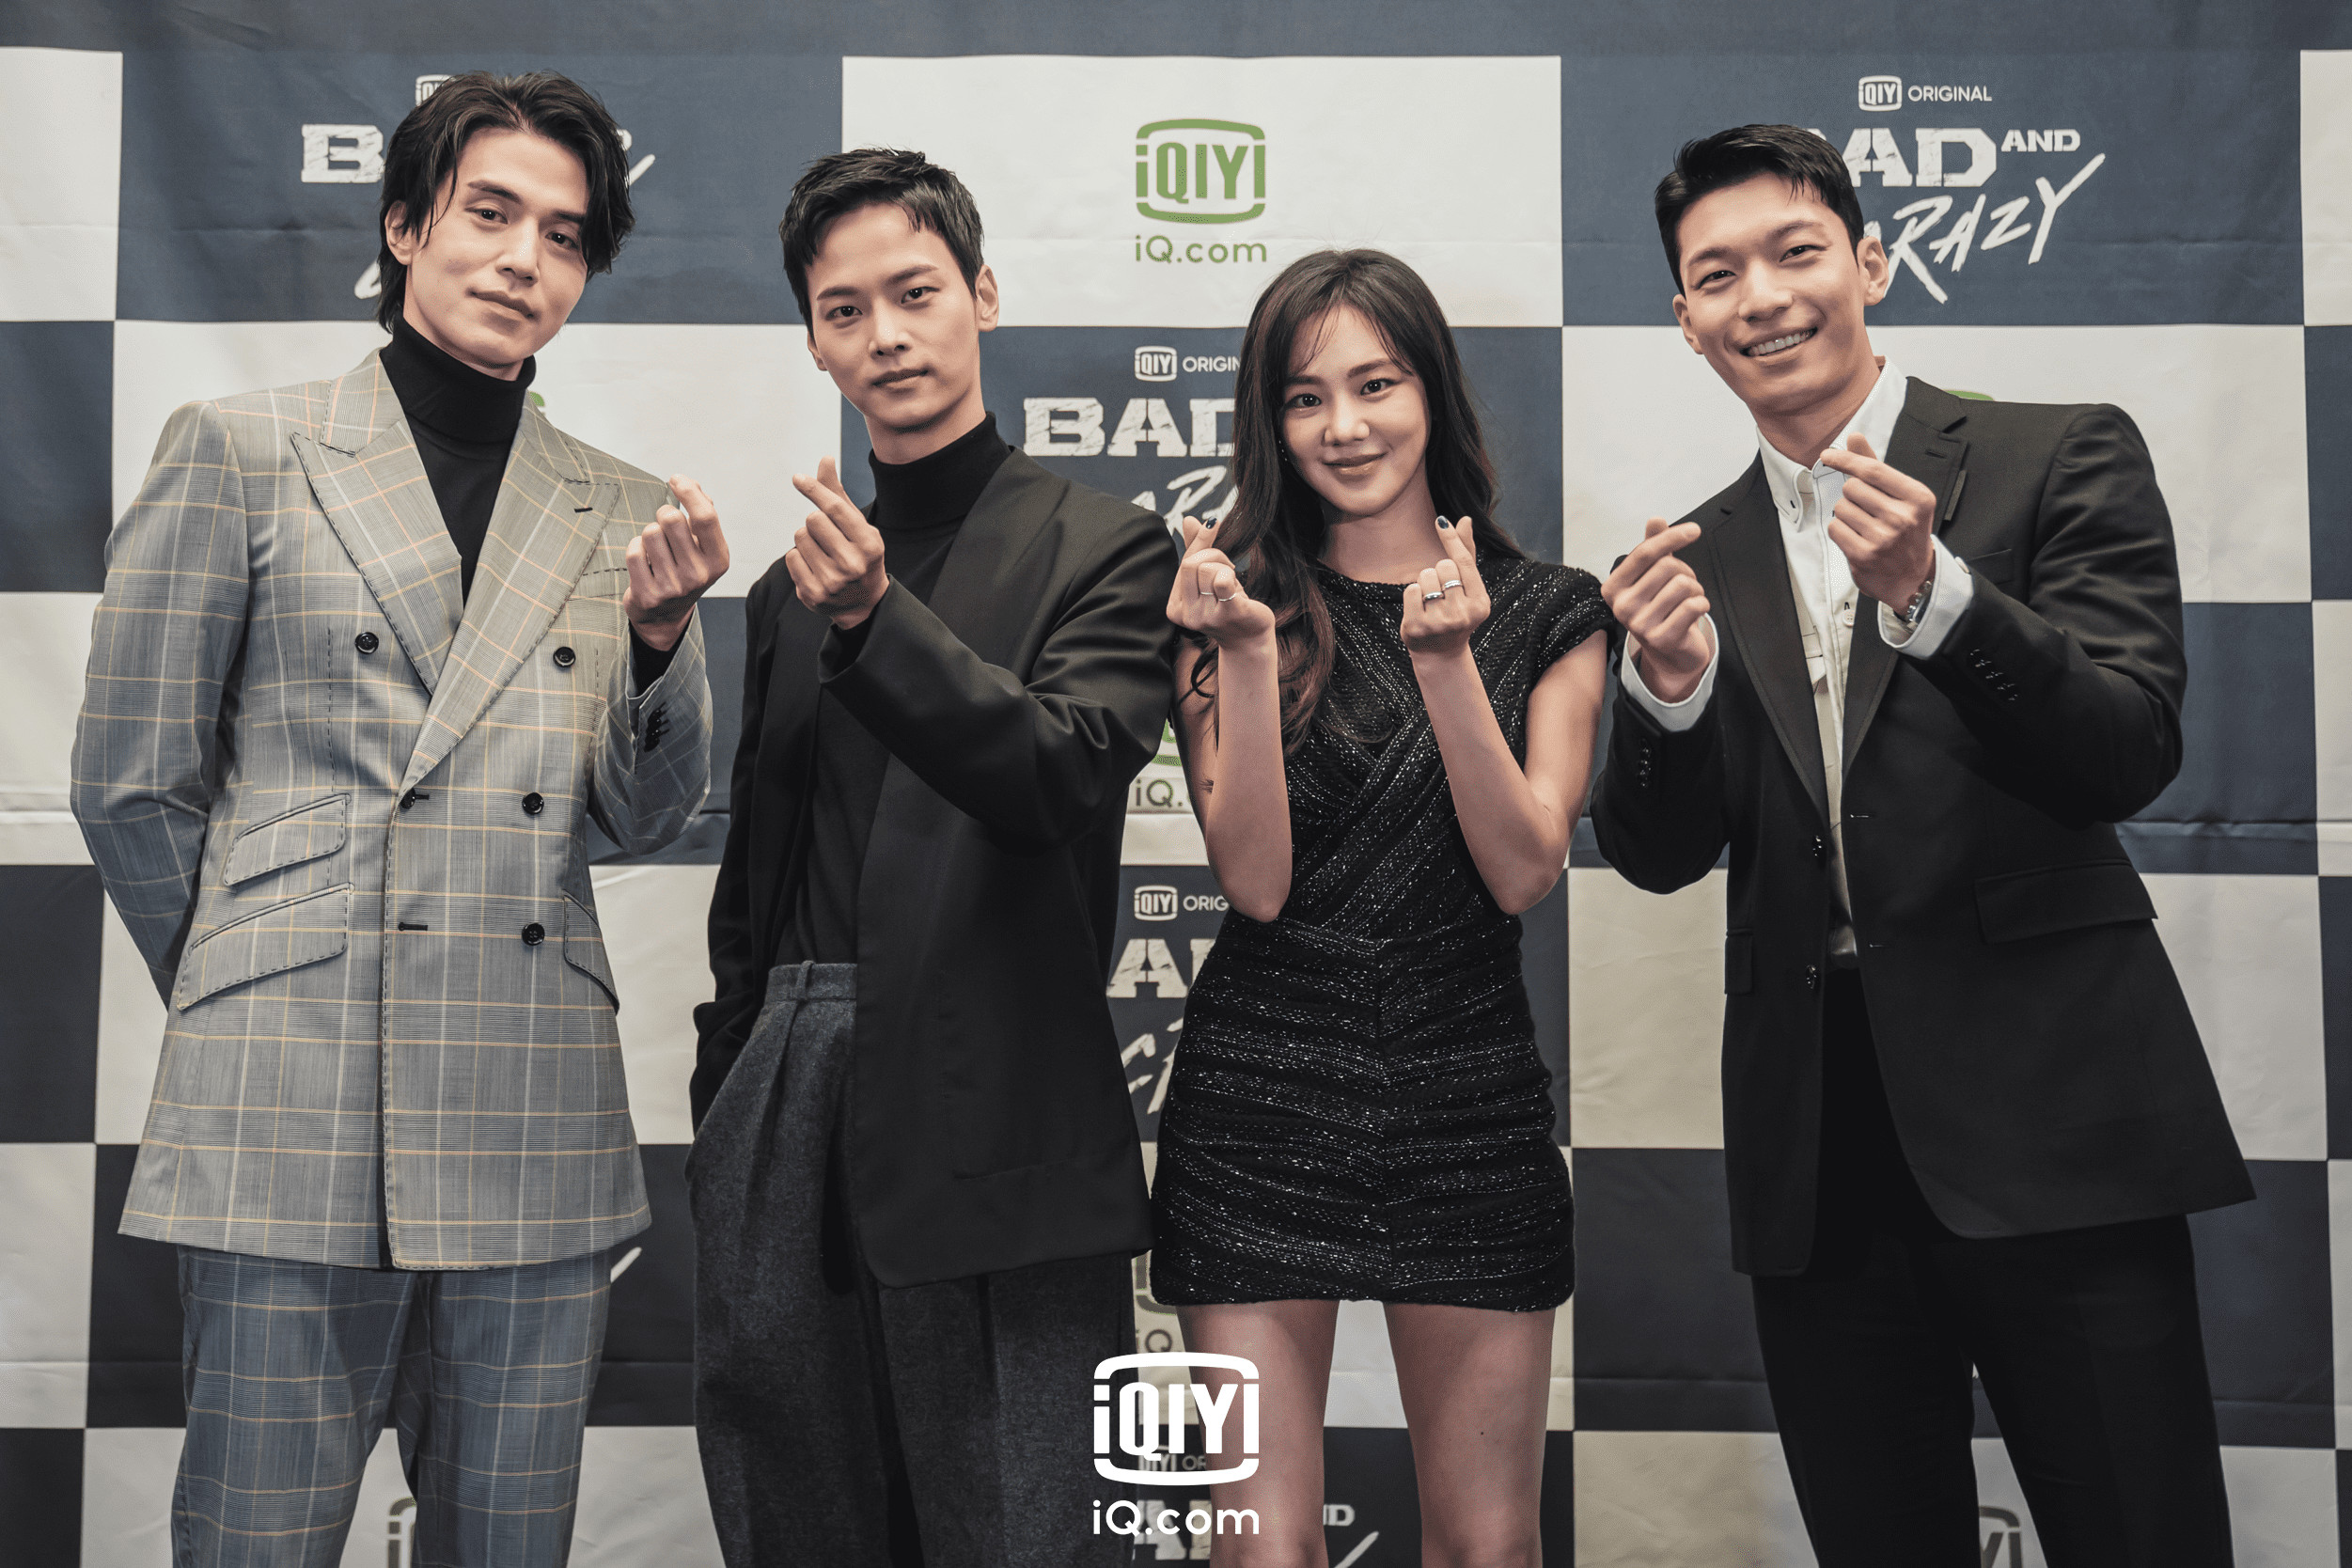 Tayang Mulai 17 Desember, Drama Korea Original Iqiyi ‘Bad And Crazy’ Suguhkan Aksi Heroik